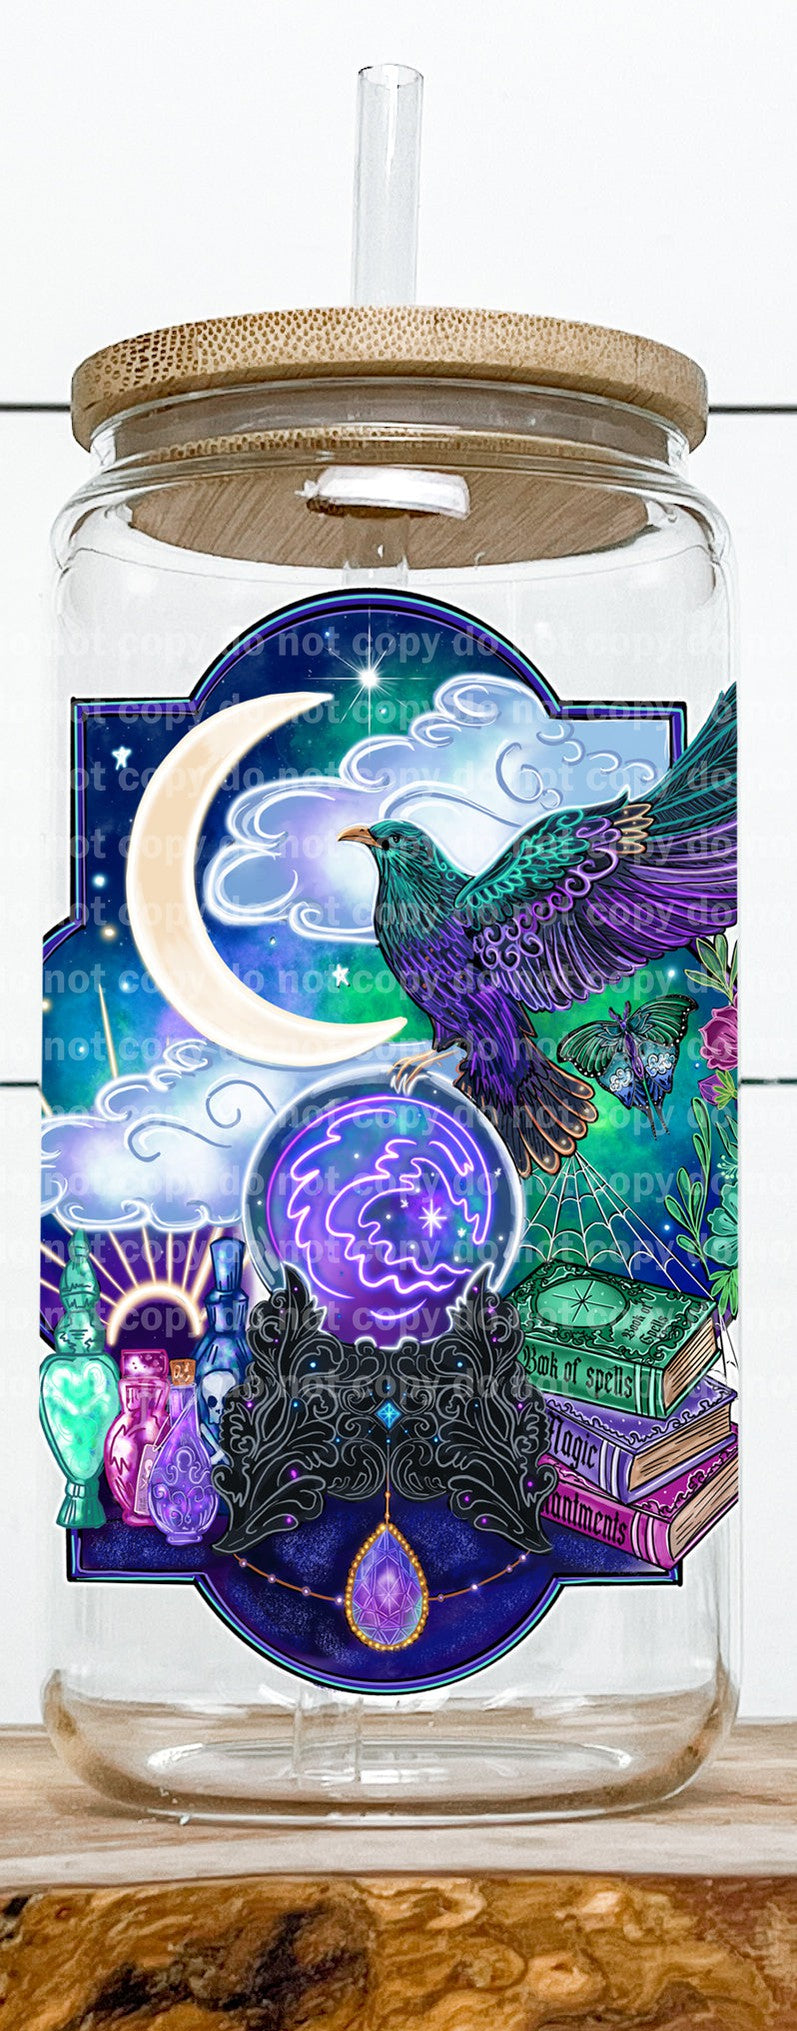 Luna cuervo hechizo libros bola de cristal Calcomanía 3.6 x 4.5